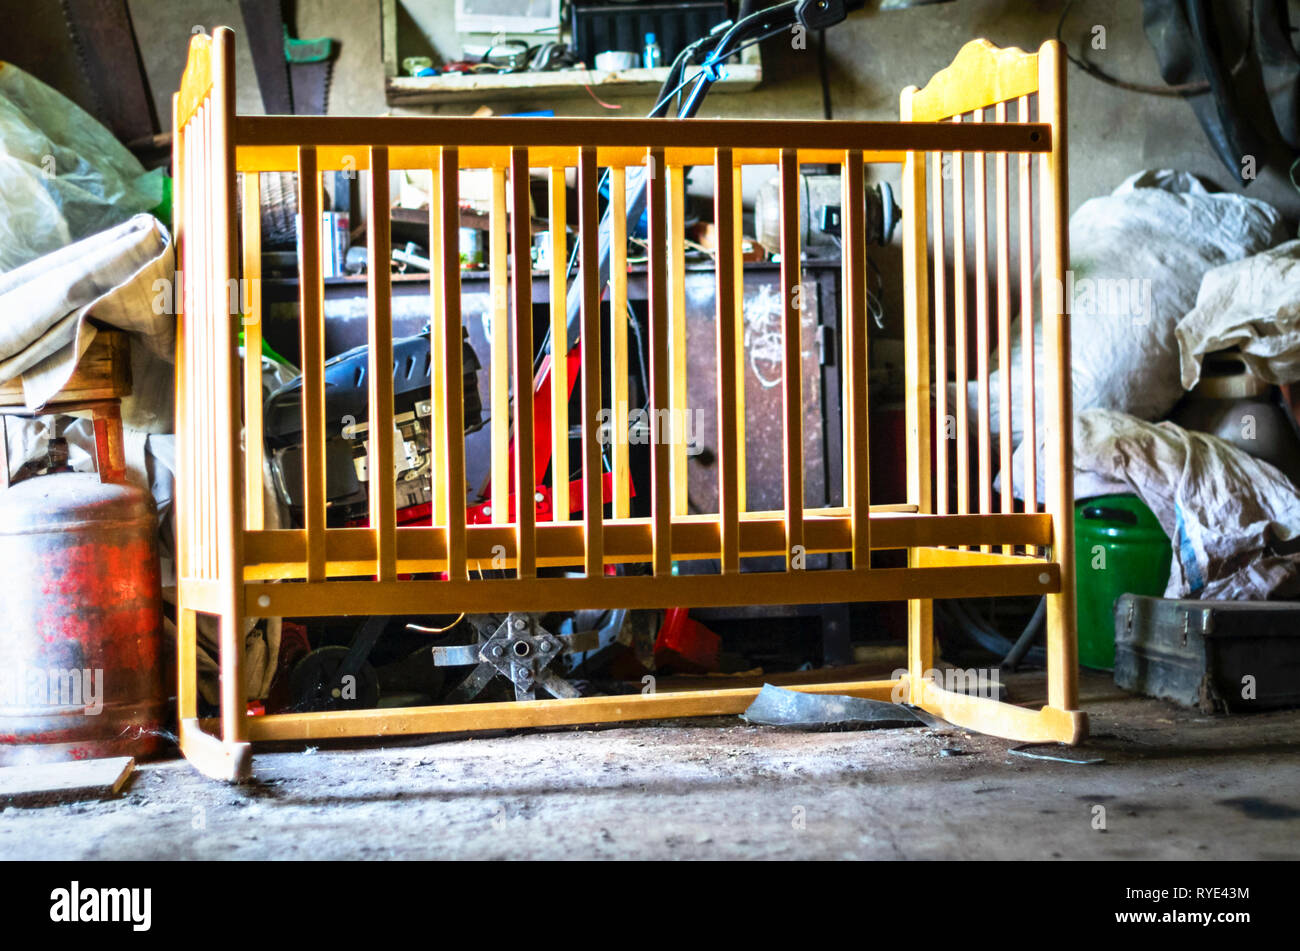 Ancienne en bois Lit bébé, berceau, lit bébé Lit dans un hangar de stockage, garage. En grandissant, la vie Concept Banque D'Images